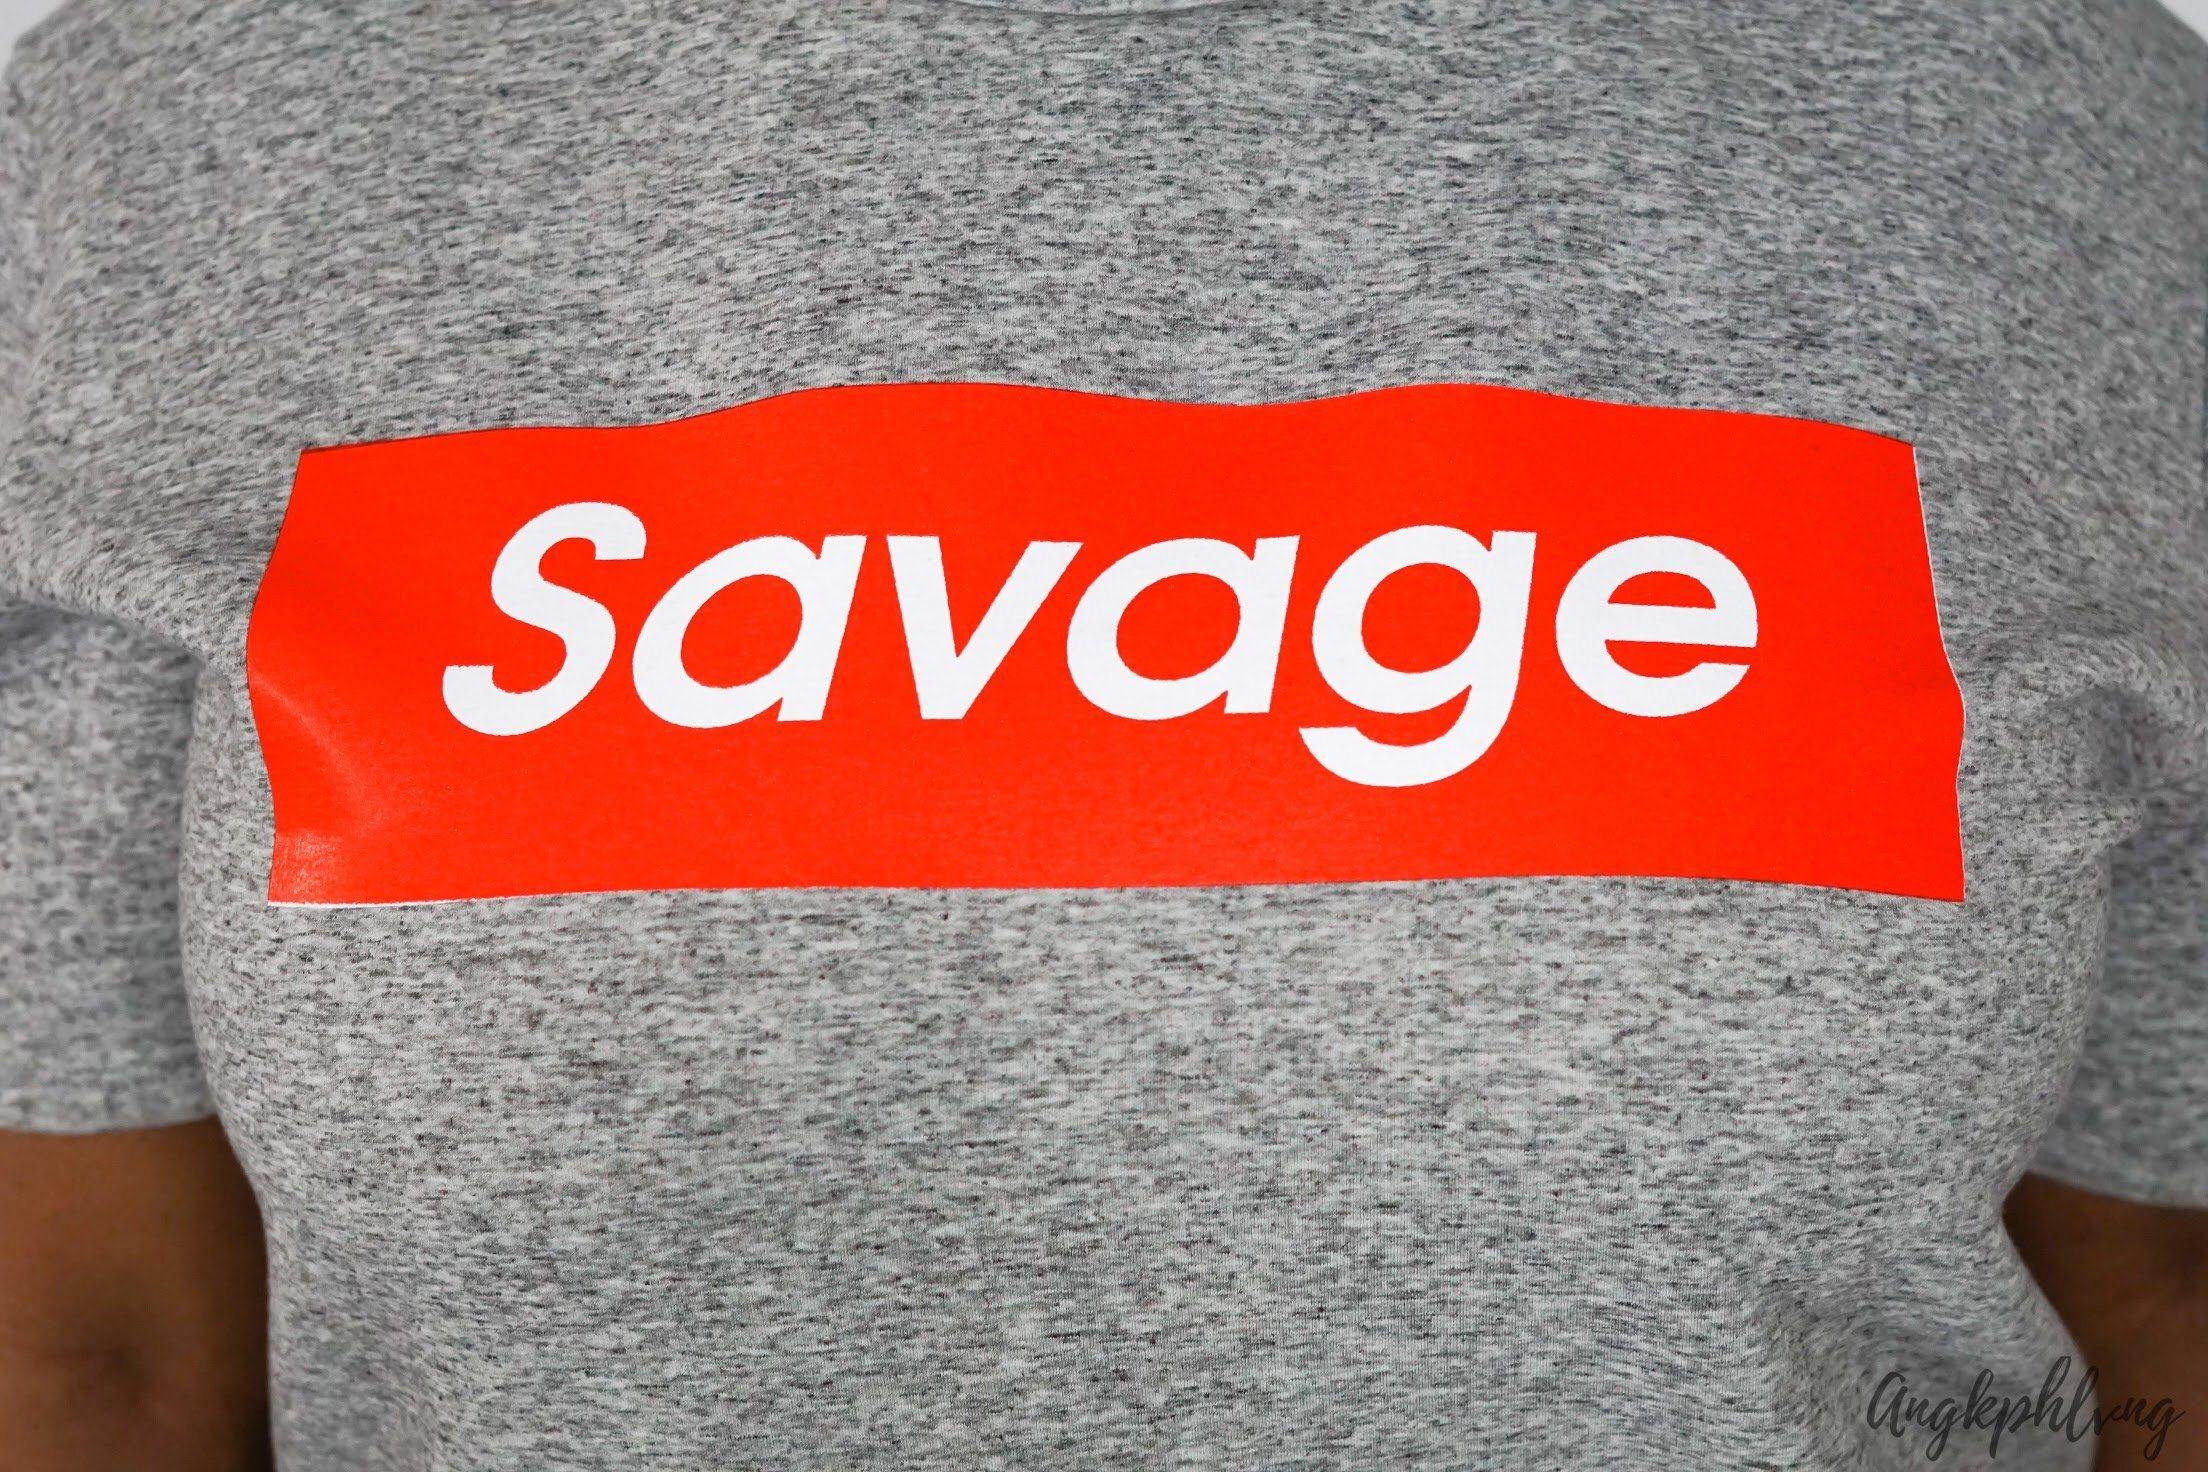 Savage Dress - Shop Besos Boutique